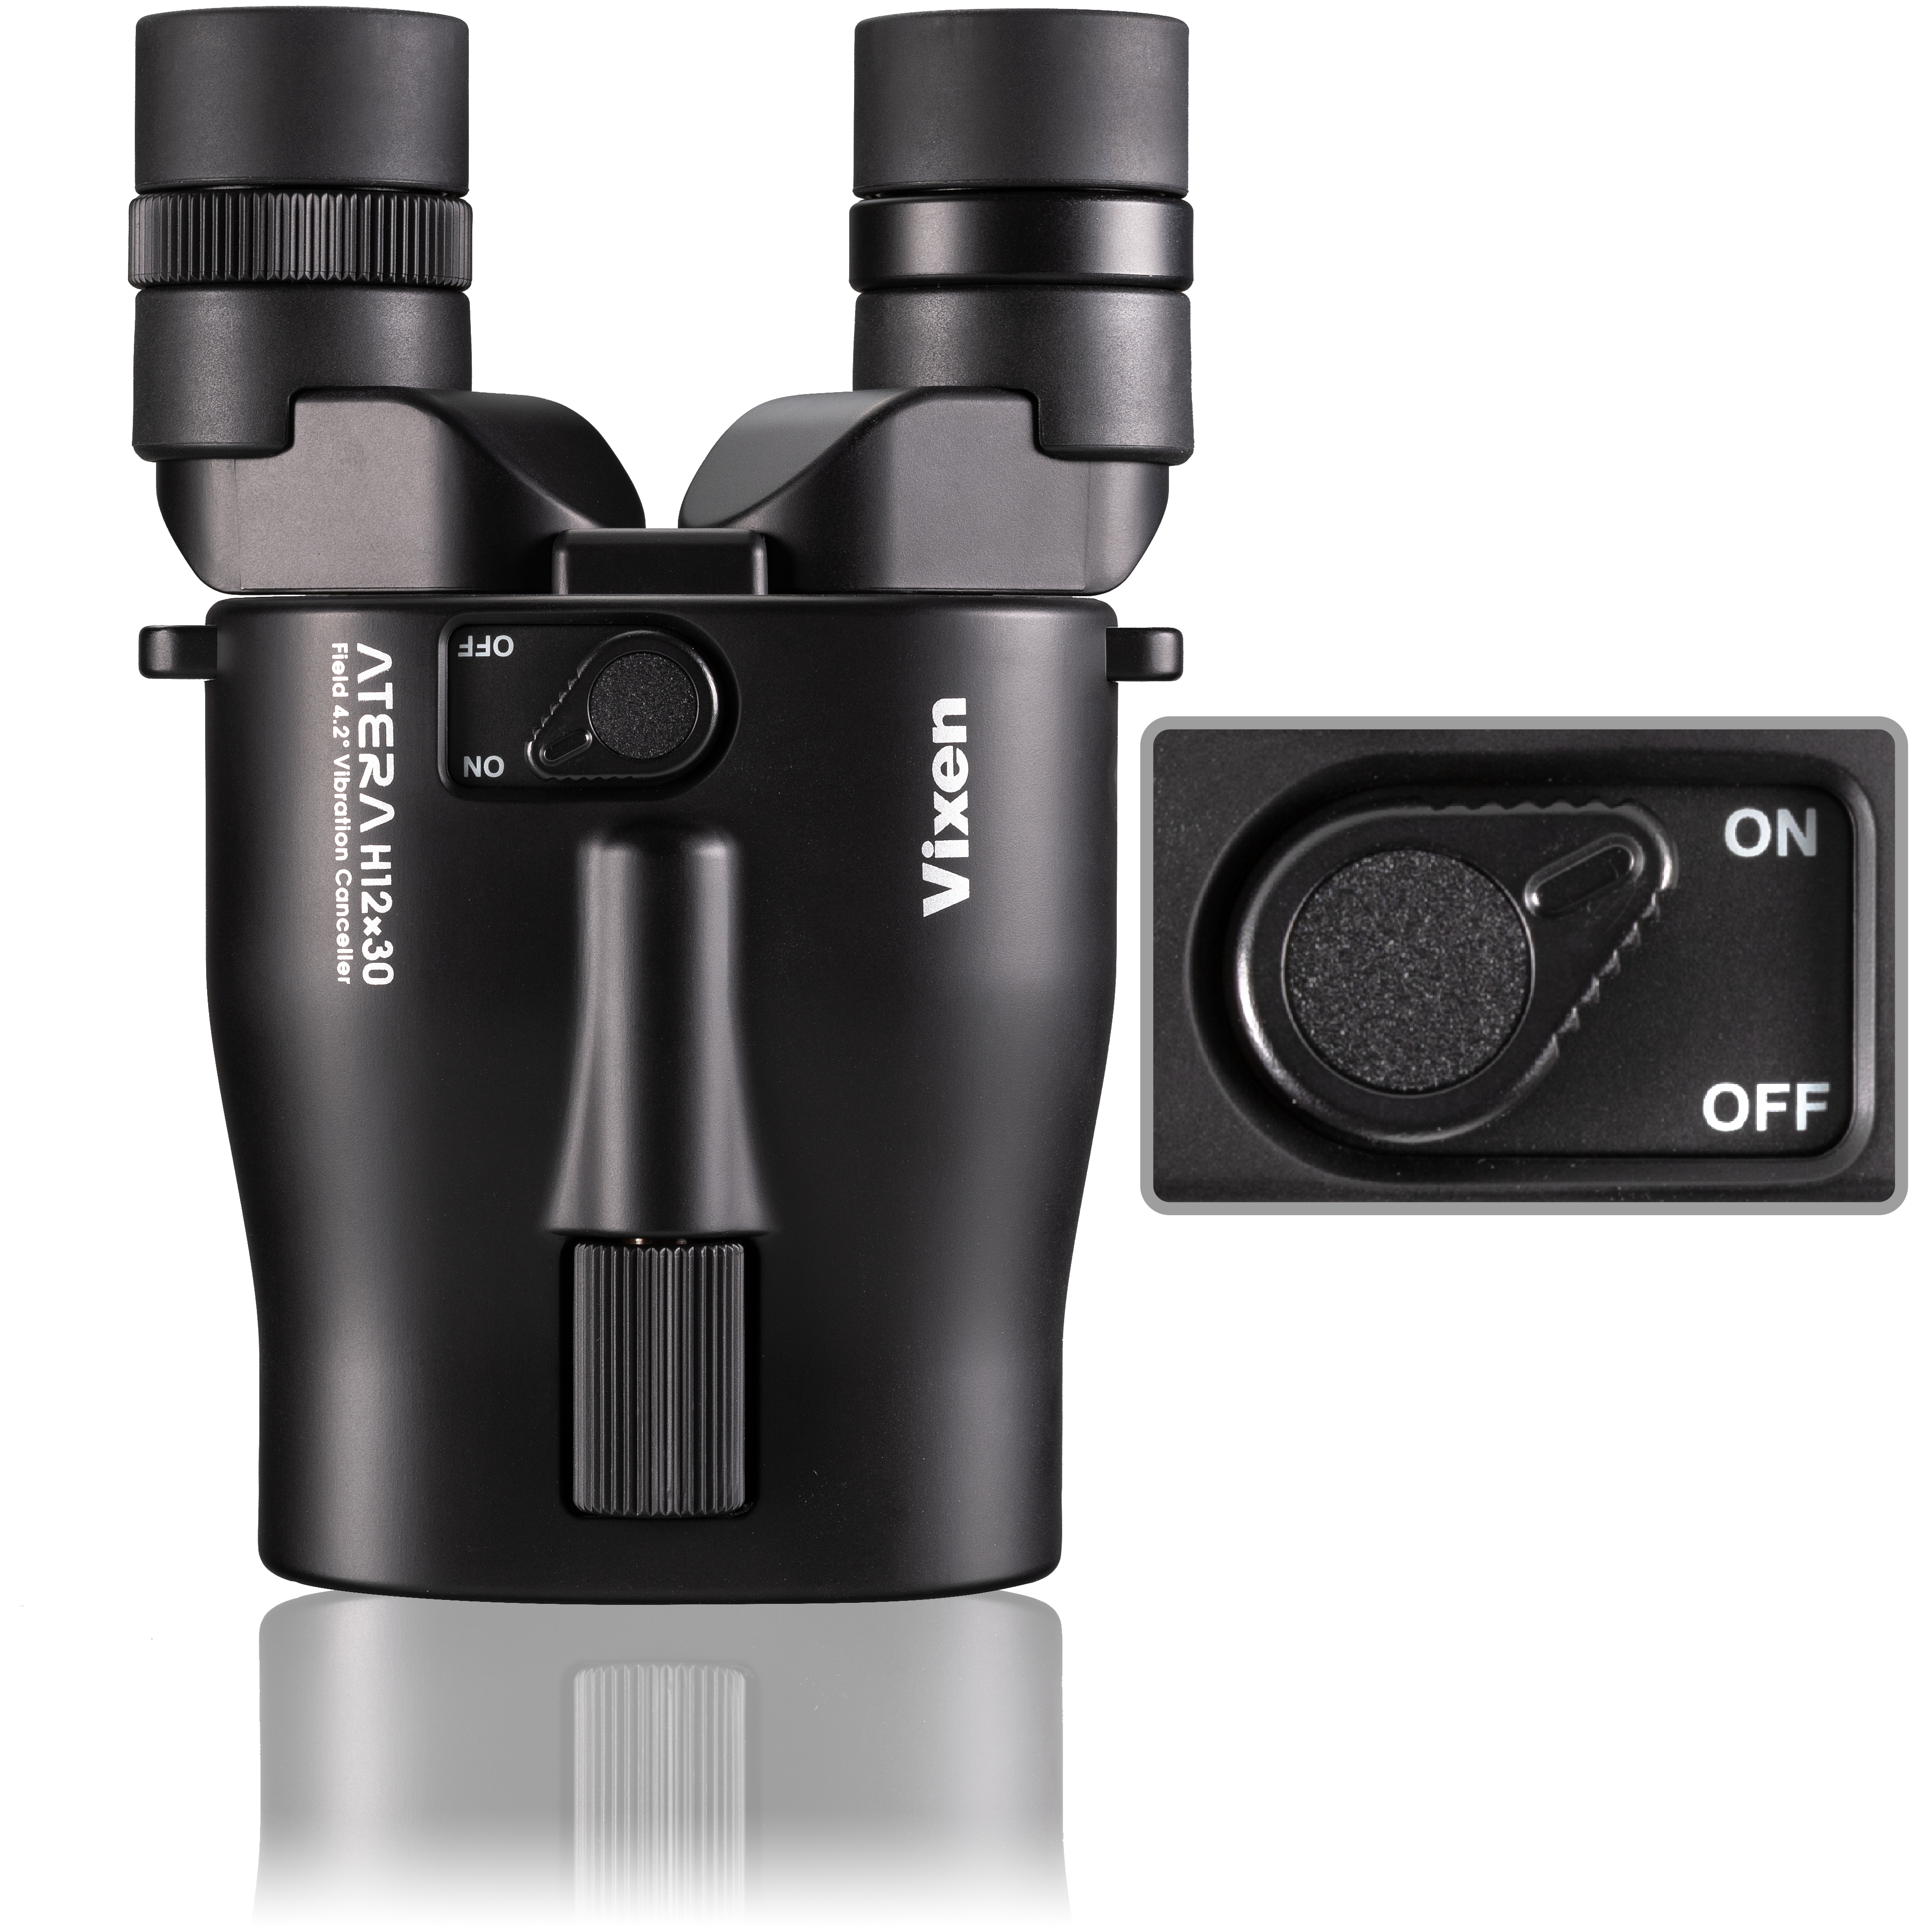 Binocular Vixen ATERA H12x30 con estabilizador, negro